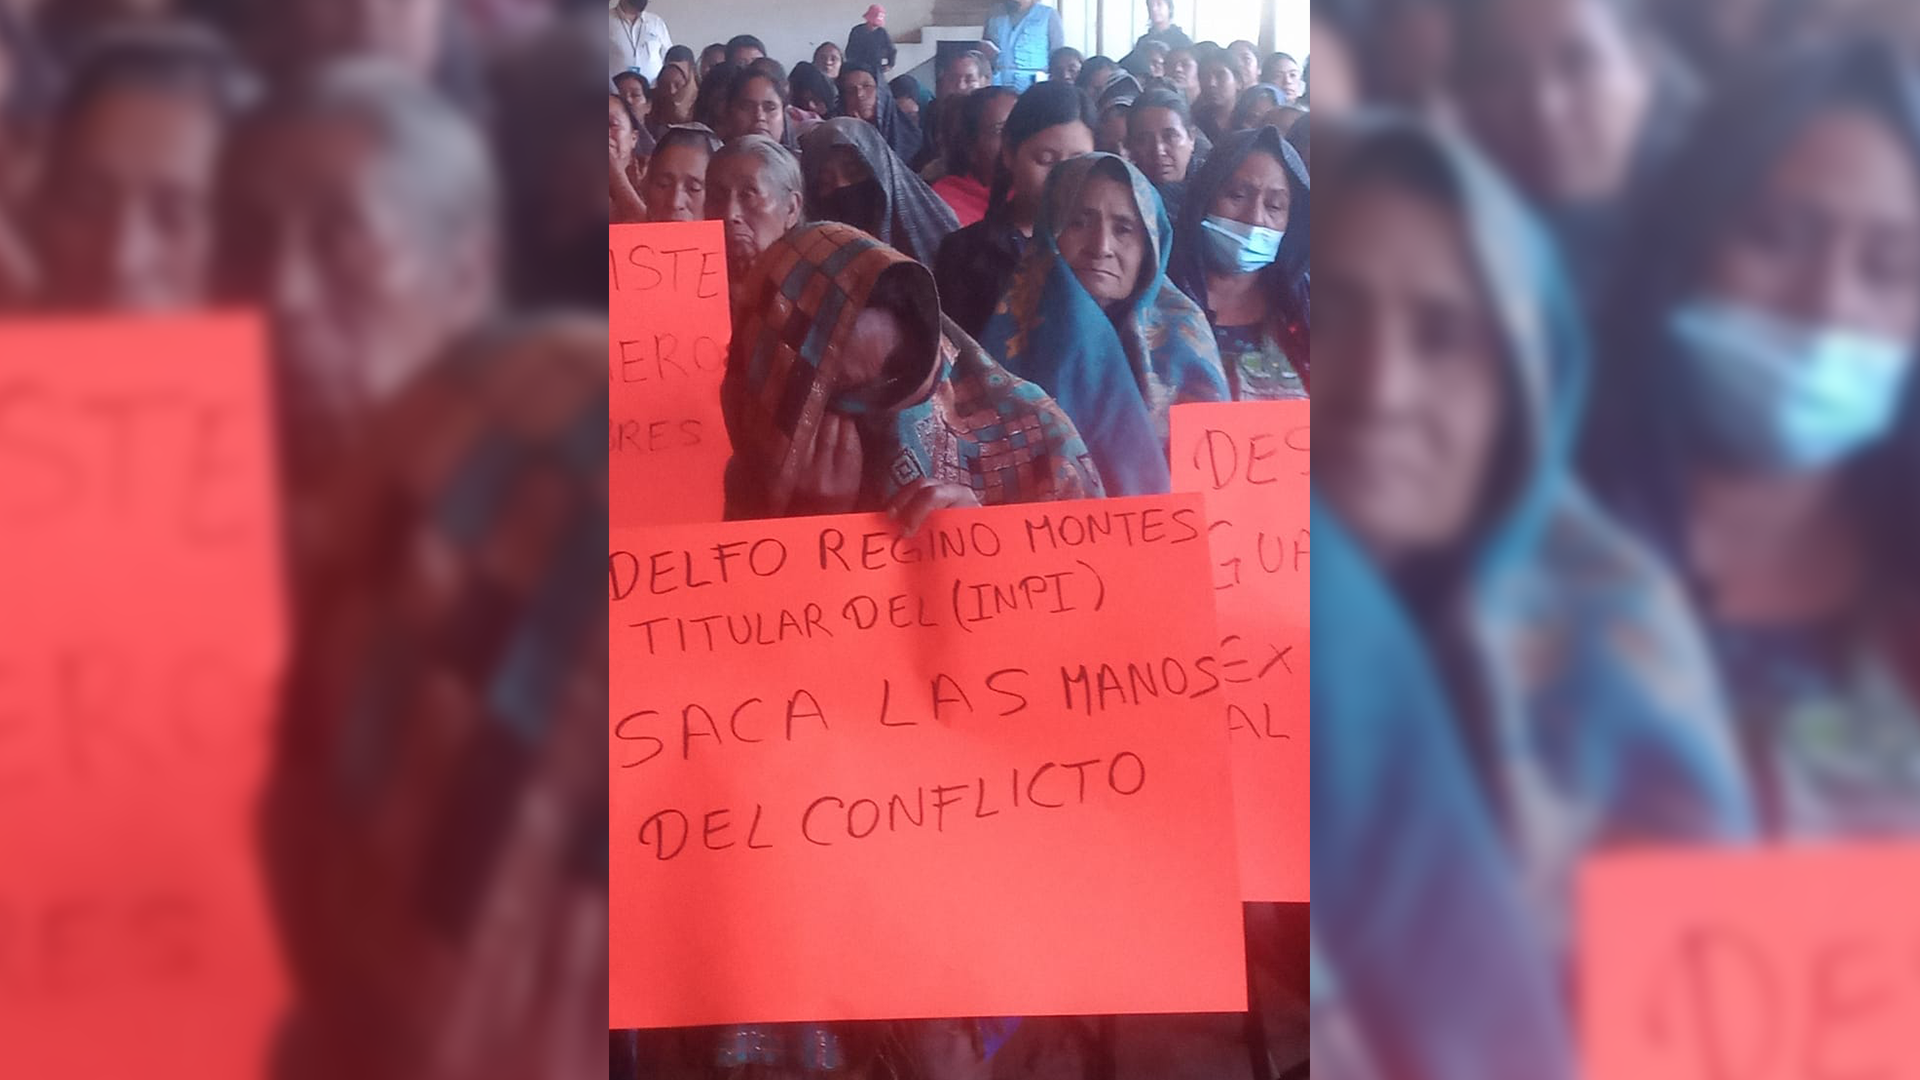 Familias de Guadalupe Victoria Juquila Mixes, Oaxaca victimas de desplazamiento forzado